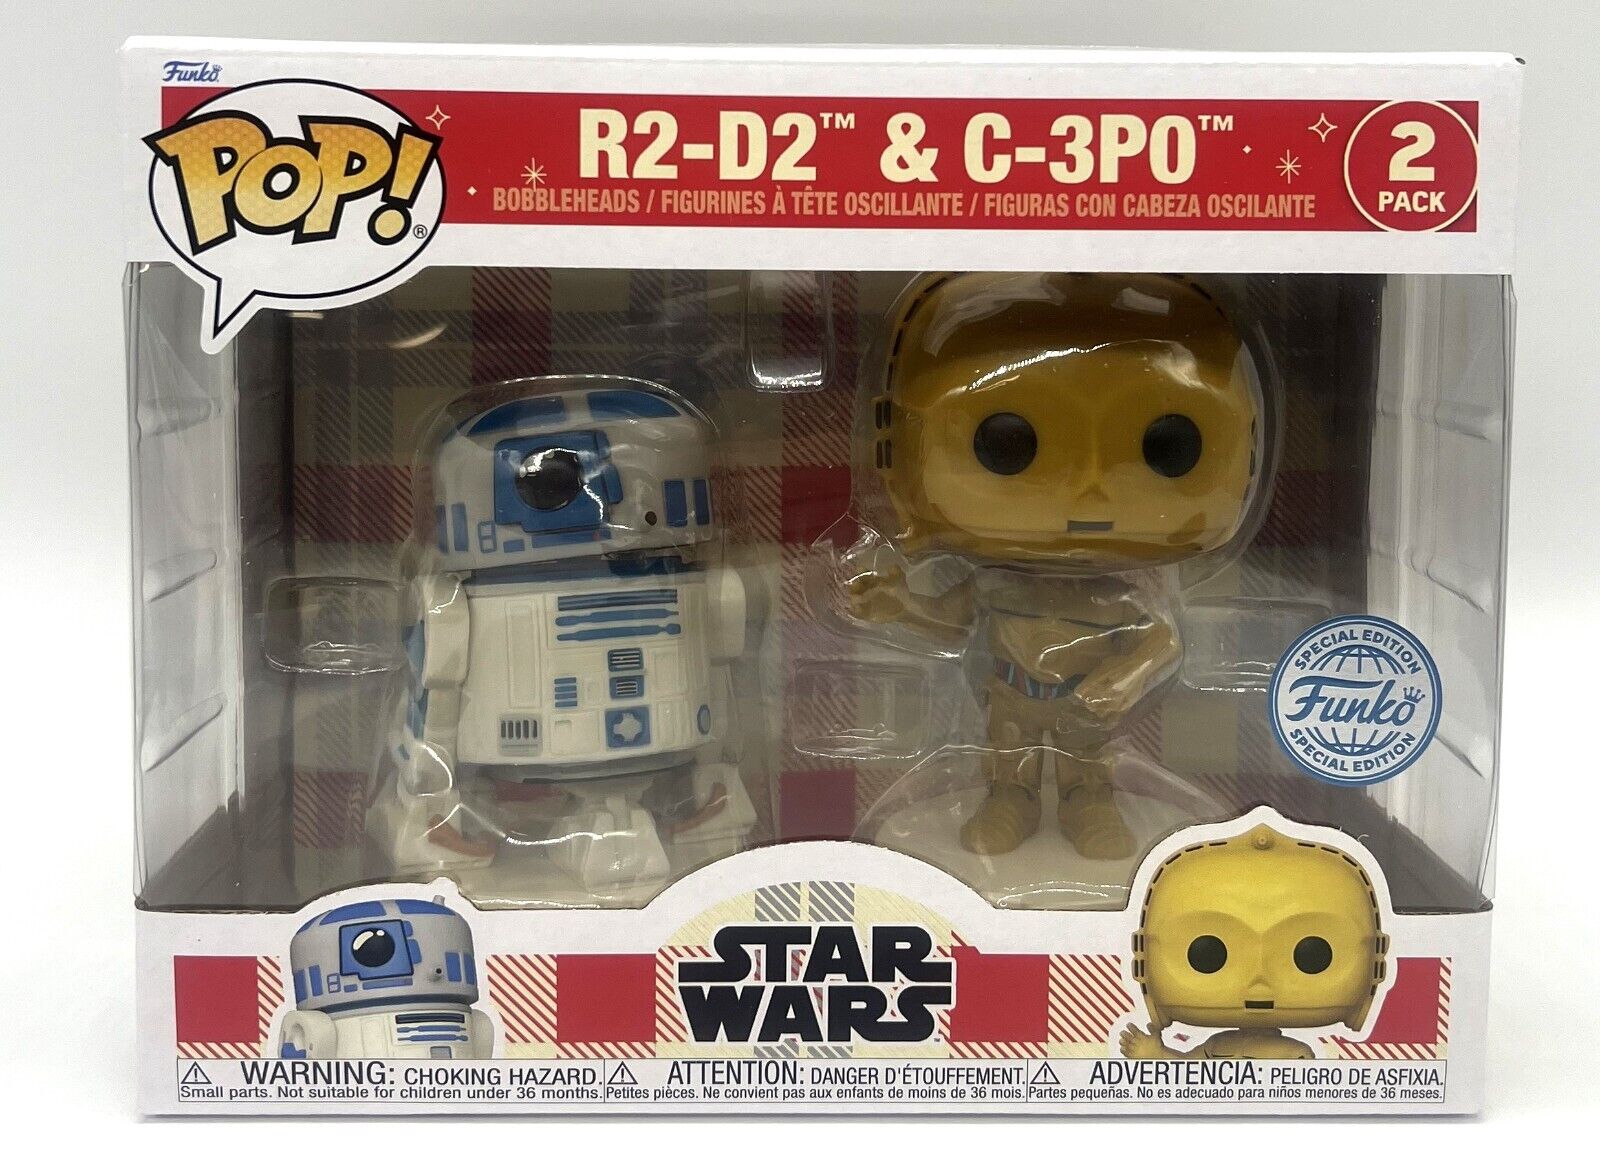 Funko Pop D100 Retro Star Wars R2-D2 & C-3PO 2 Pack Funko Special Edition